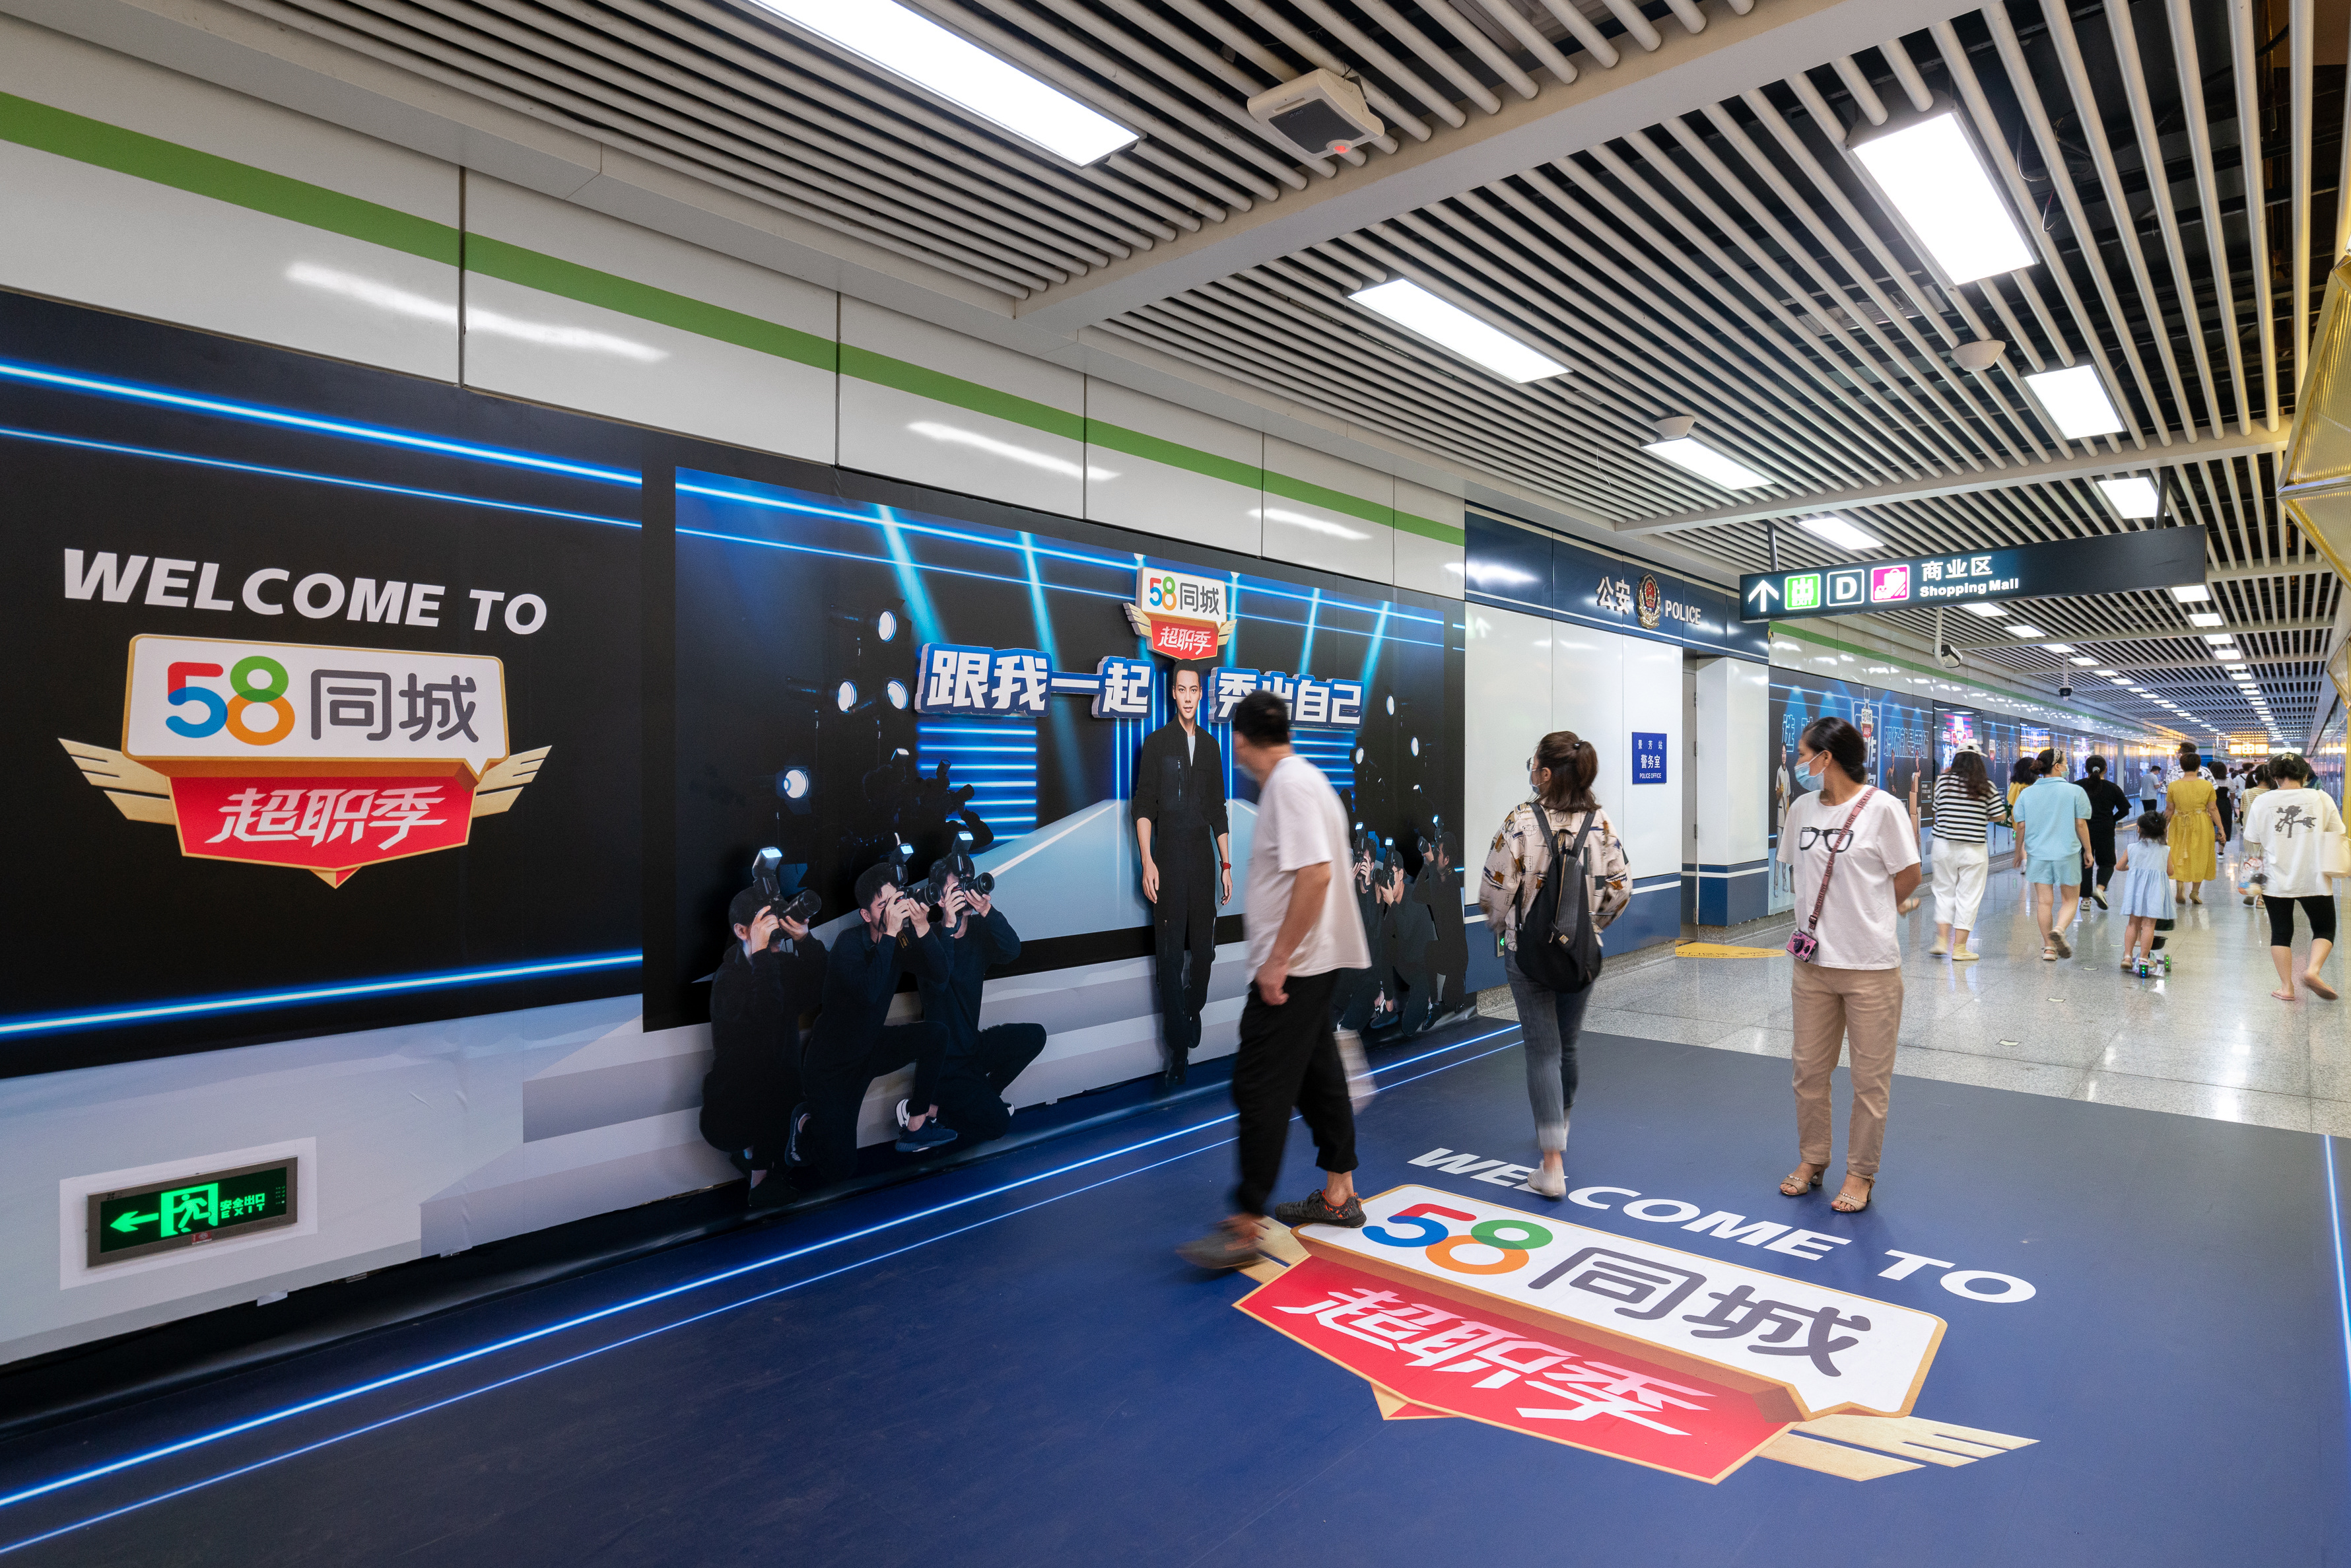 58同城超职季，打造杭州地铁新秀场